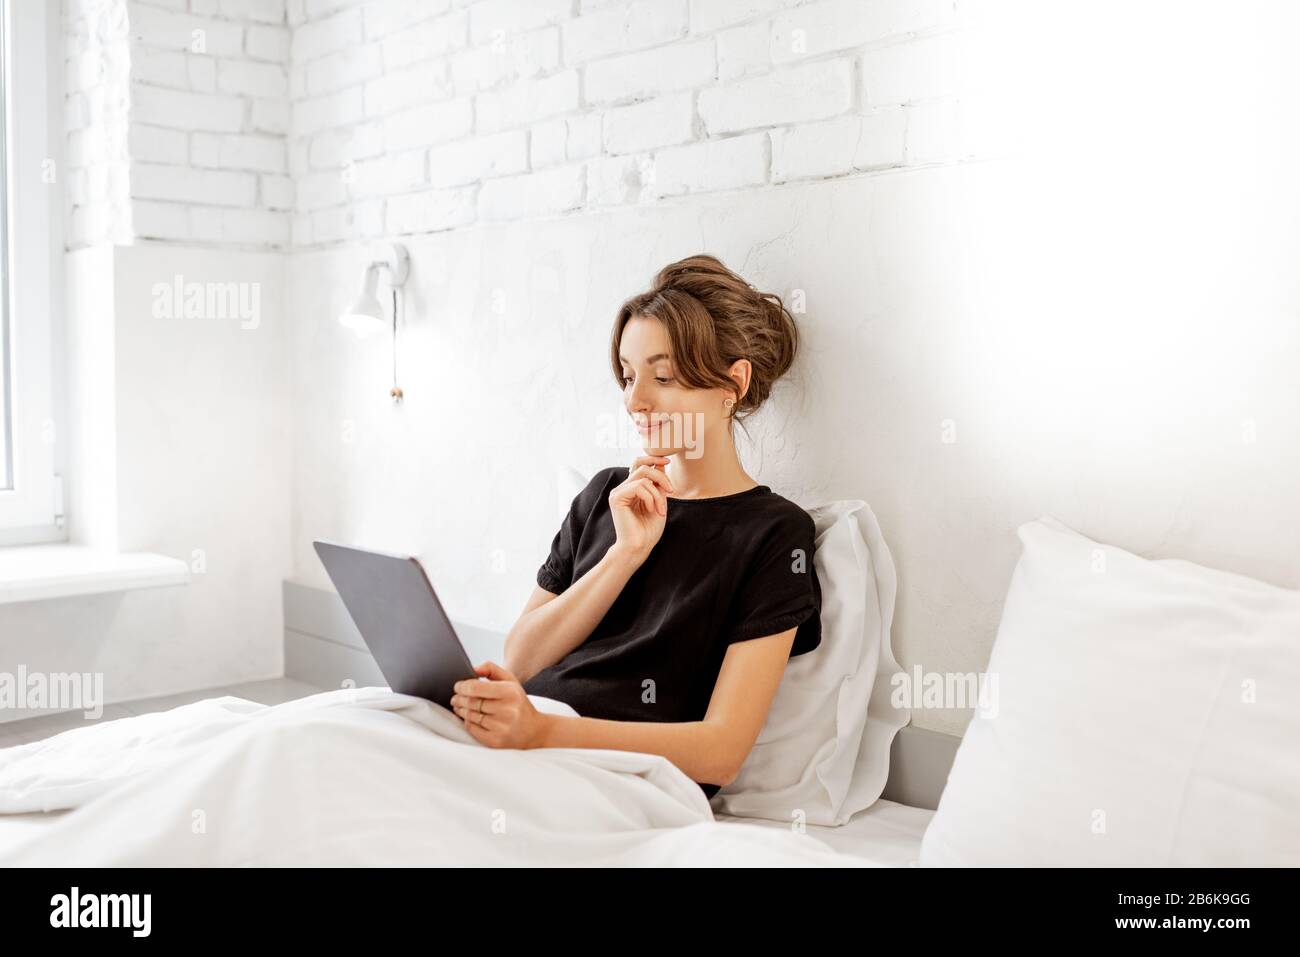 Junge Frau, die digitale Tablette verwendet, während sie entspannt im Bett eines weißen Bedrroms sitzt. Konzept einer Freizeit mit mobilen Funkgeräten zu Hause Stockfoto